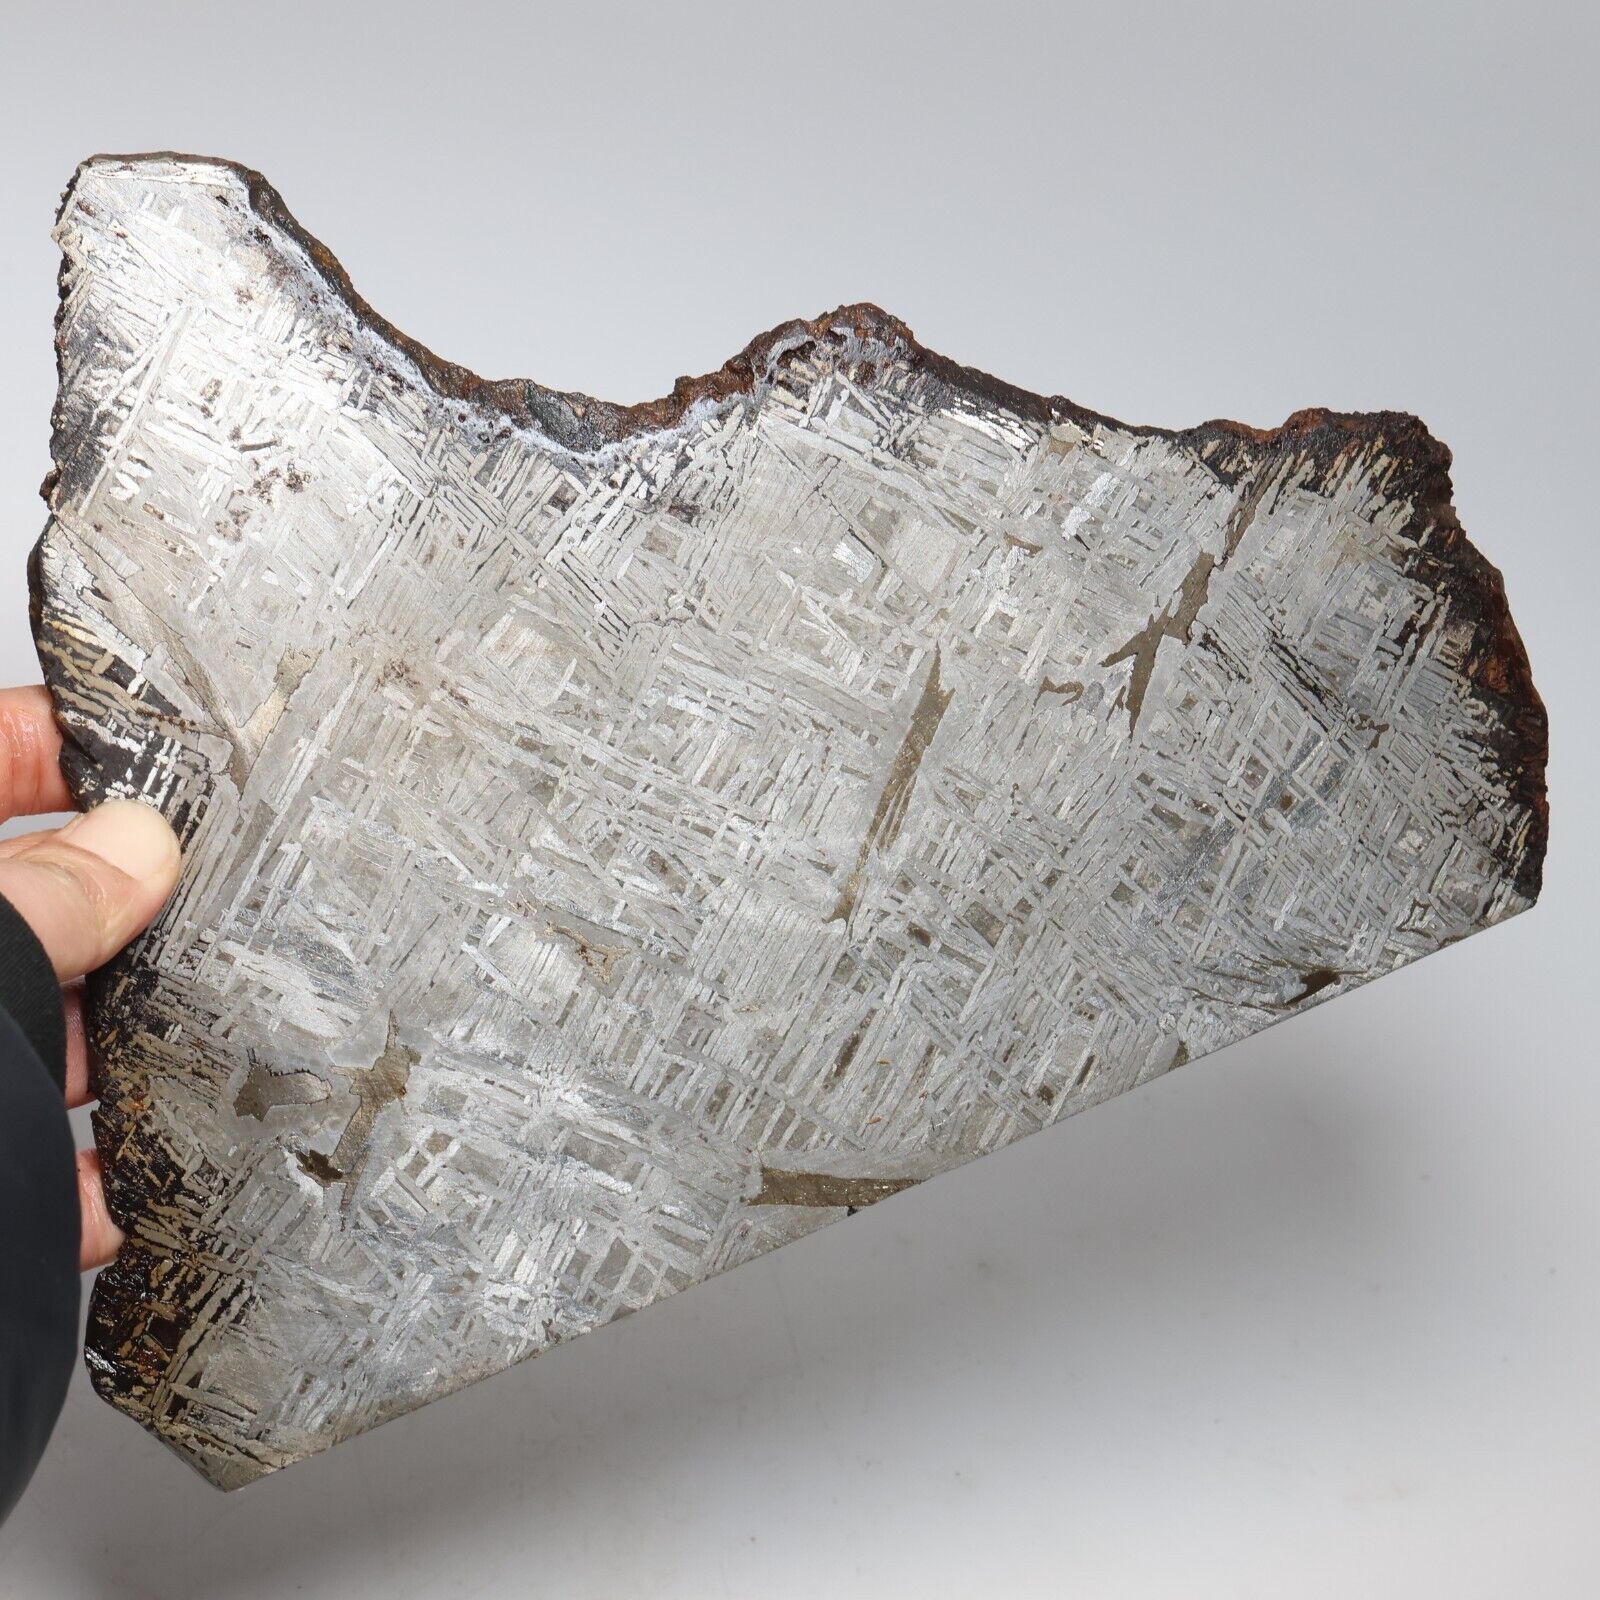 638g  Muonionalusta meteorite part slice C7186